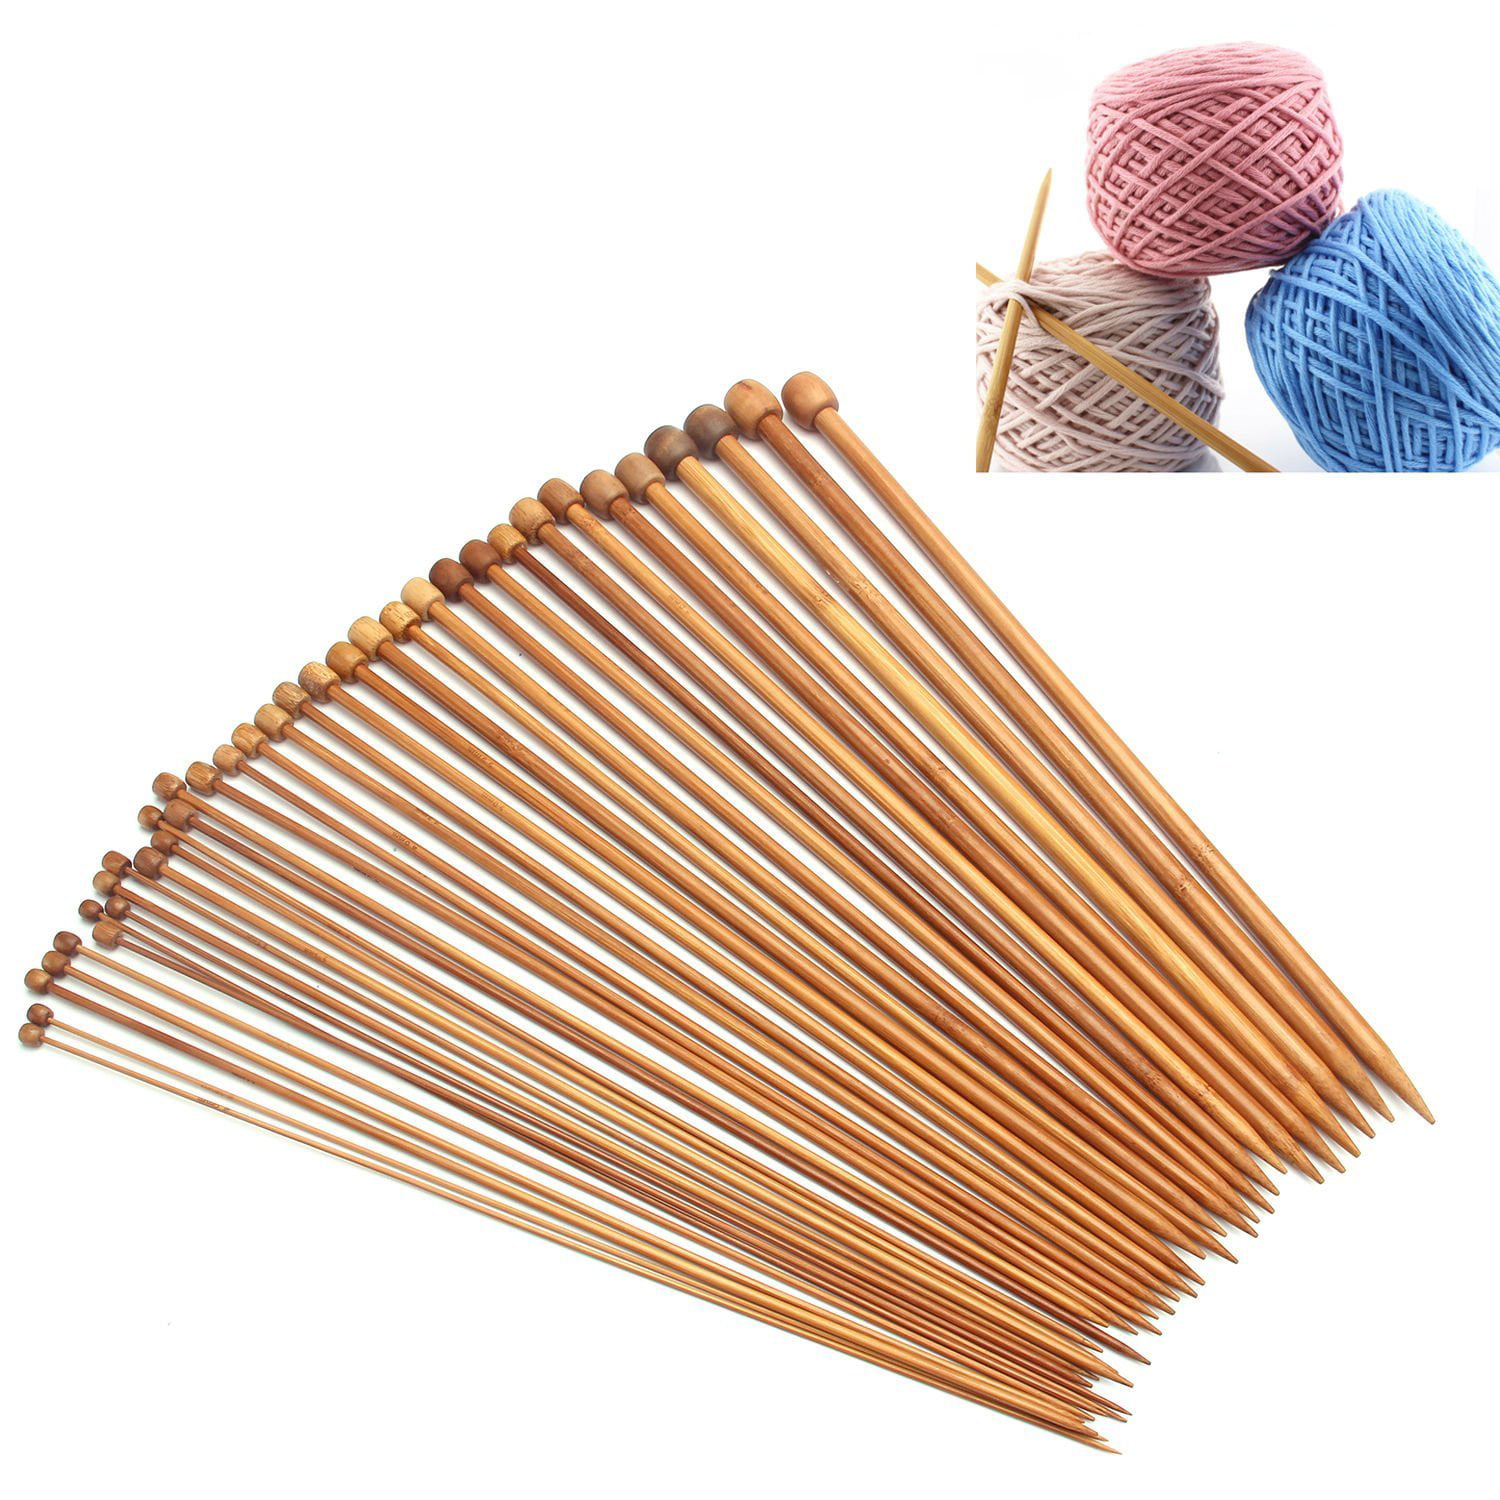 3 Bamboo Knitting Needles Set Carbonized Bamboo Knitting Needles Wooden Single